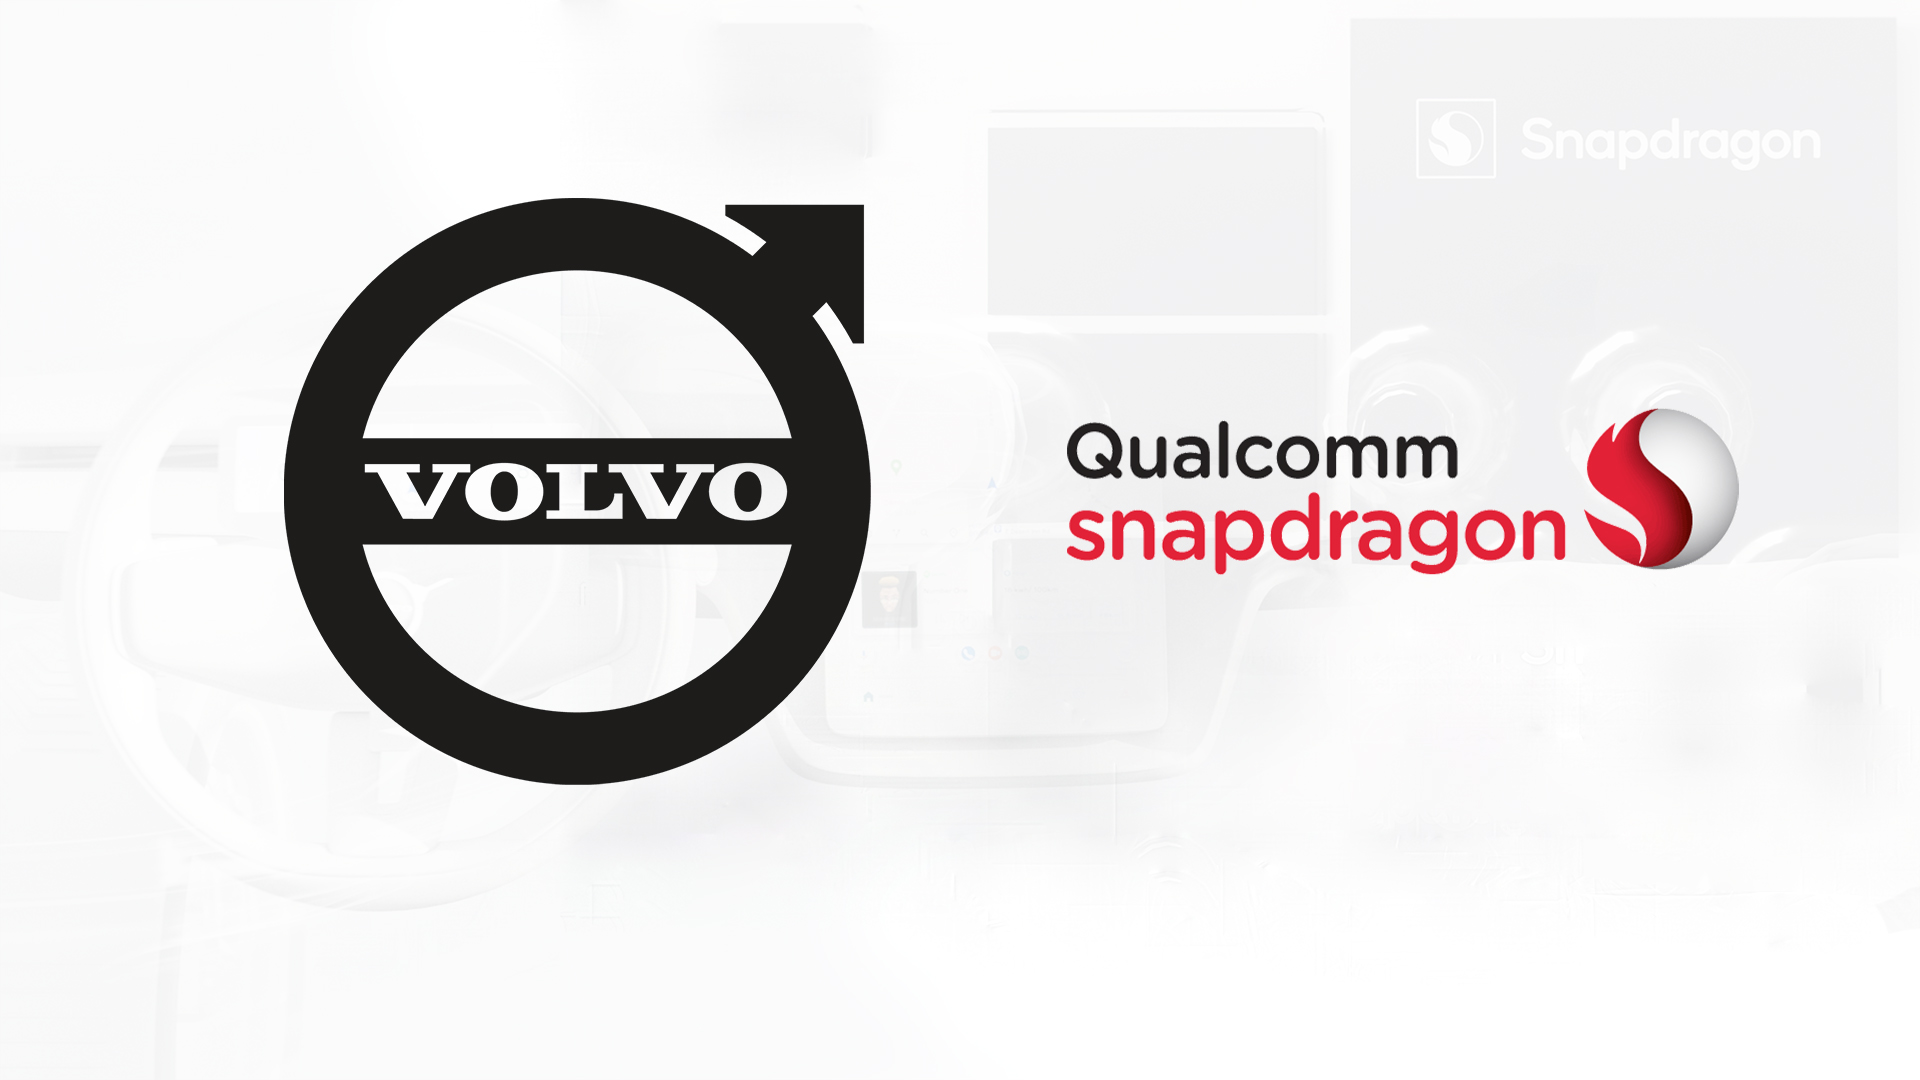 Η Volvo και η Qualcomm συνεργάζονται για να προσφέρουν το απόλυτο